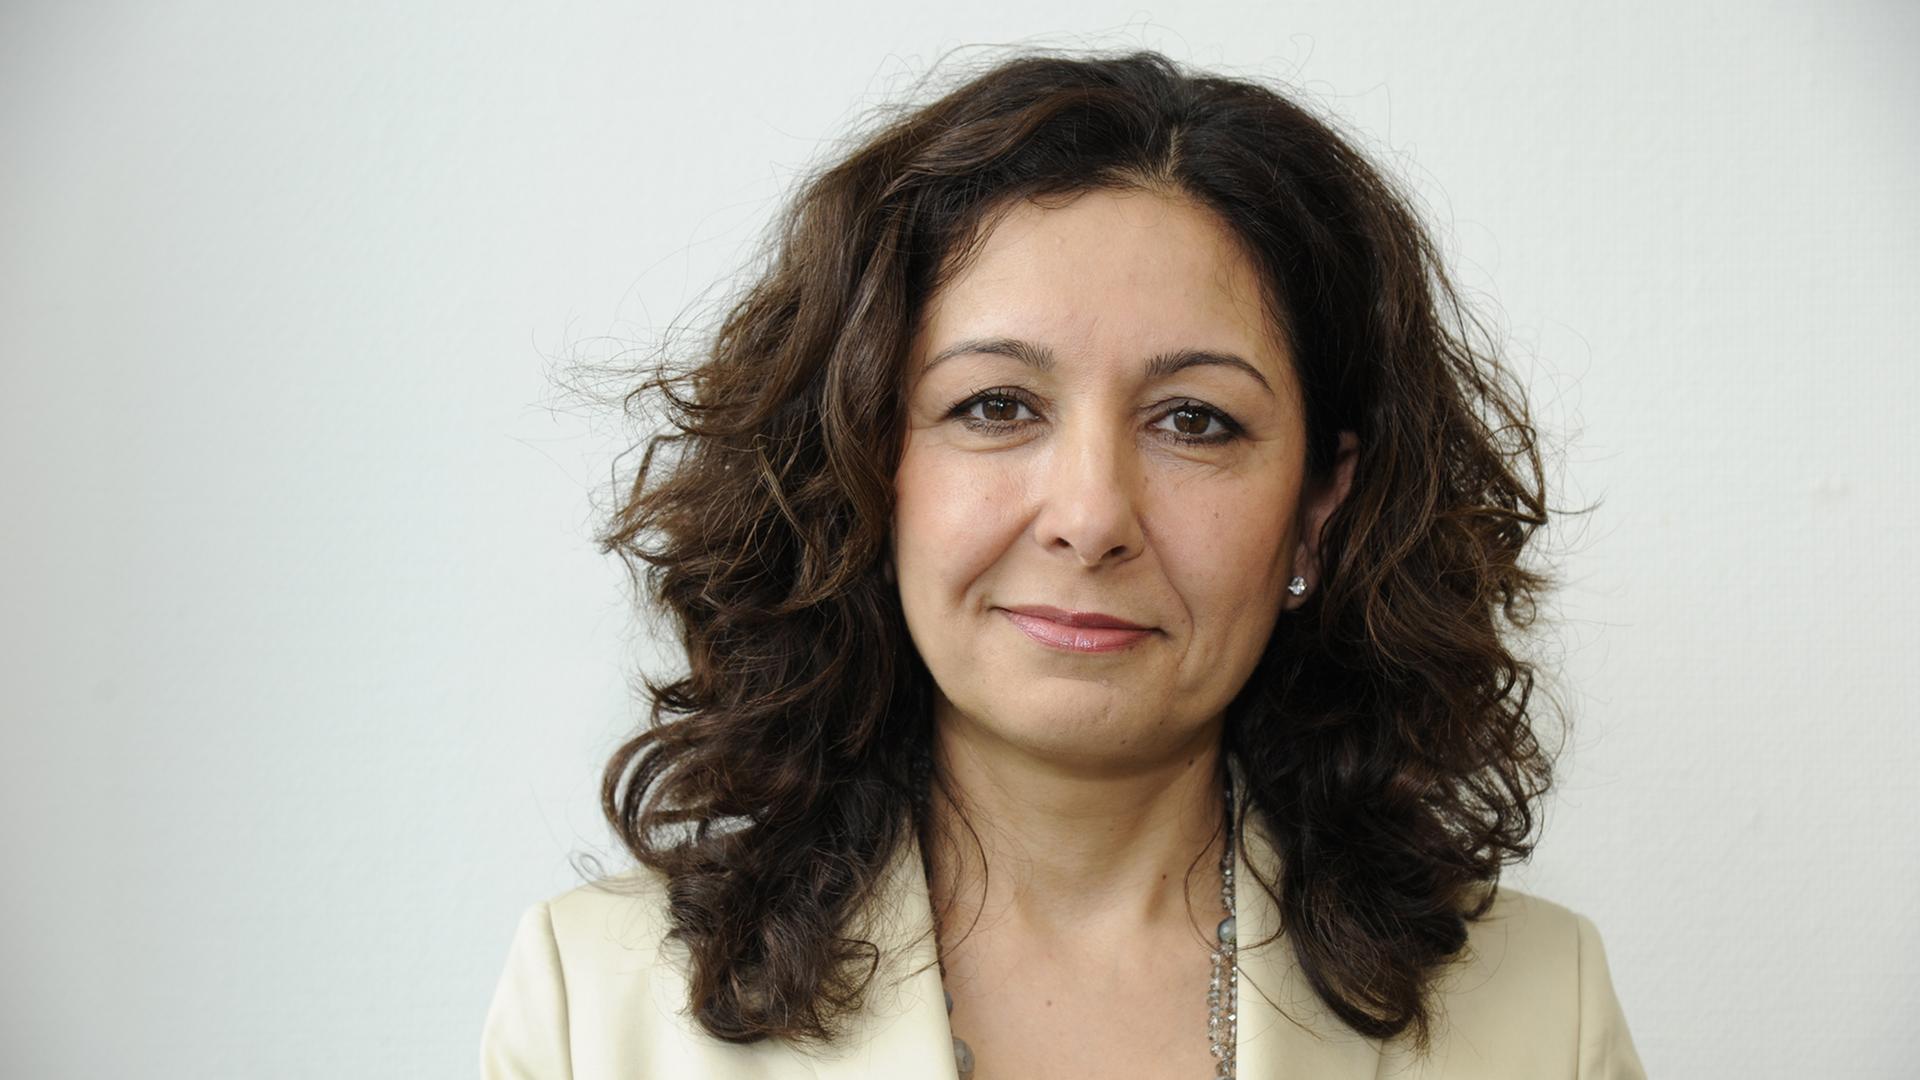 Die Sozialpädagogin und Mediatorin Sosan Azad, aufgenommen am 27.04.2014 in Köln.